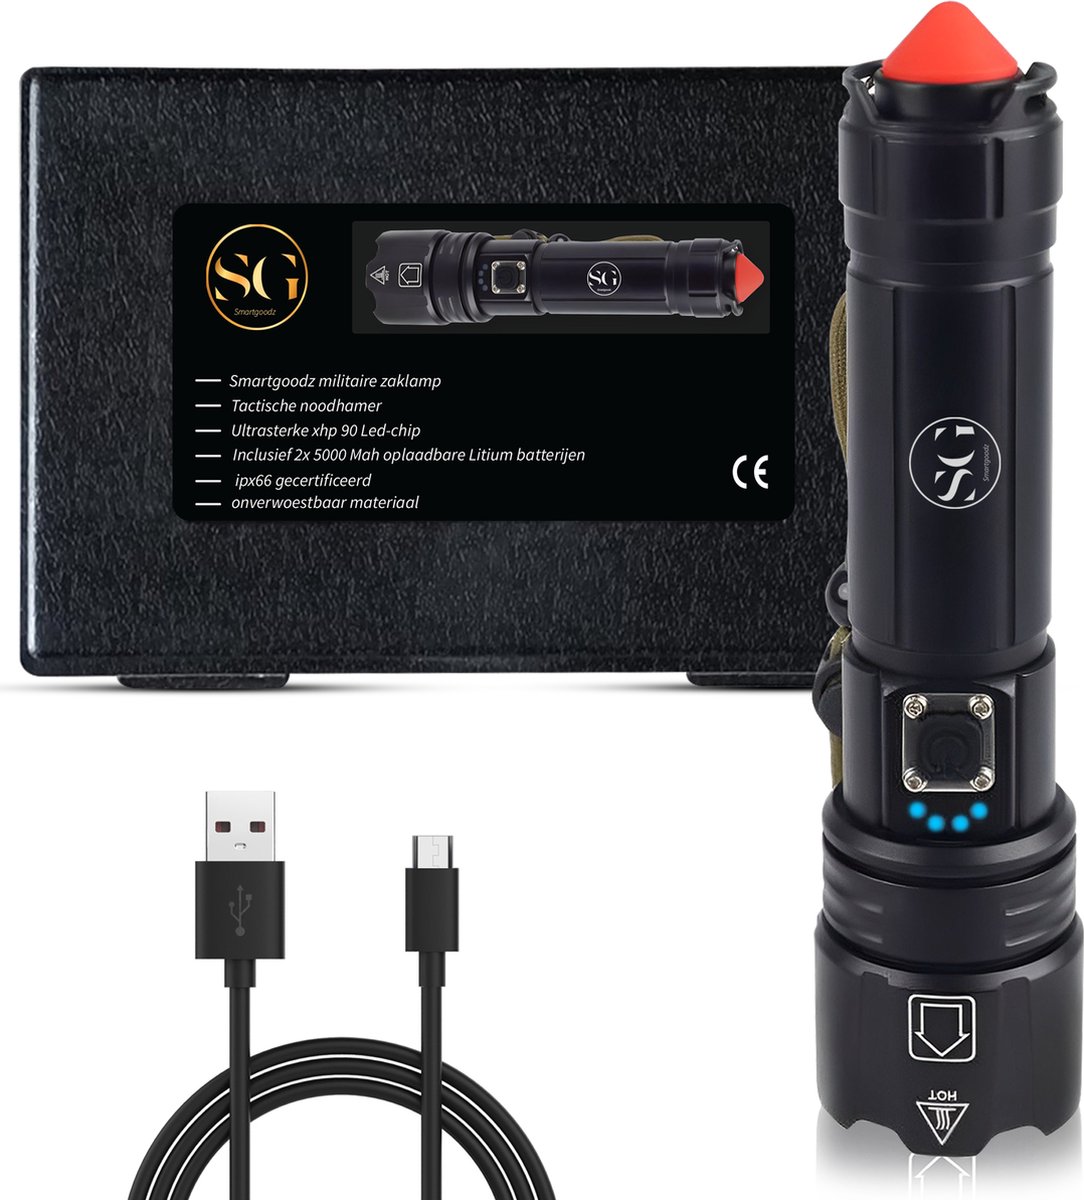 Smartgoodz - Zaklamp - Usbc Oplaadbaar - Powerbank - 2500 Lumen - 2x batterij - Noodhamer - Tactische Zaklampen - 2 jaar garantie - LED - SmartGoodz